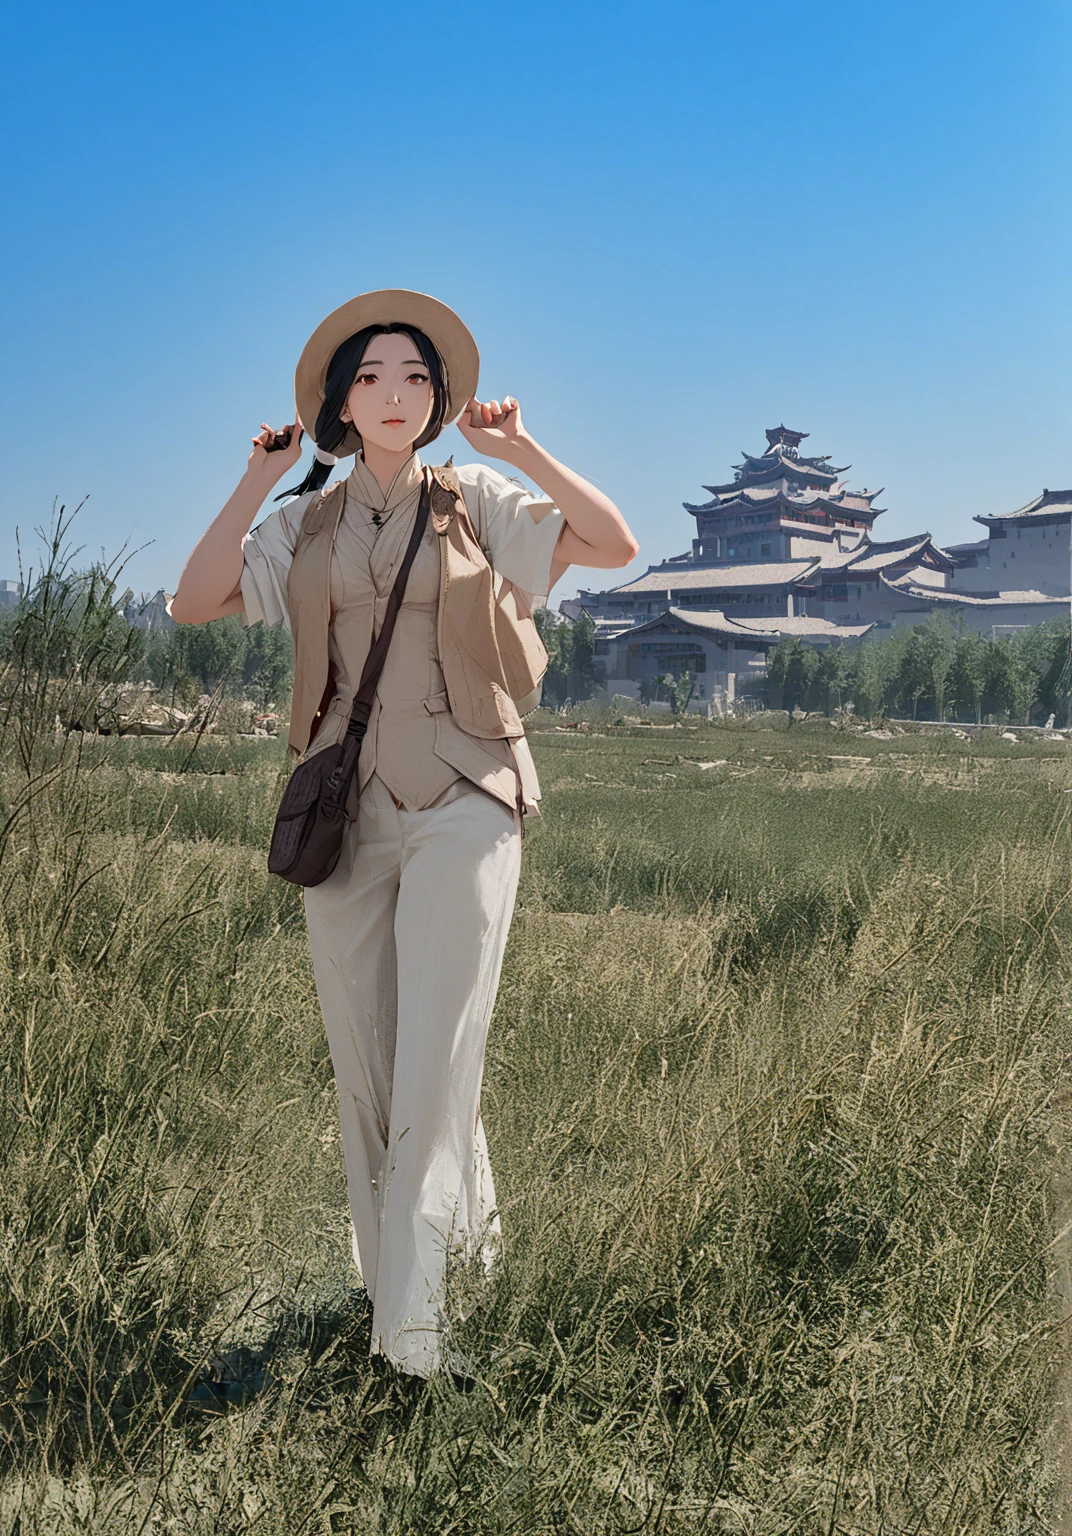 mujer con sombrero y chaleco de pie en el campo，el fondo es un edificio, en una ciudad antigua, Usar un sombrero de viaje, Inspirado por Tang Yifen, Beijing, inspirado en Zha Shibiao, inspirado en Yao Tingmei, inspirado en Zhang Zeduan, inspirado en Gu Zhengyi, inspirado en Chen Daofu